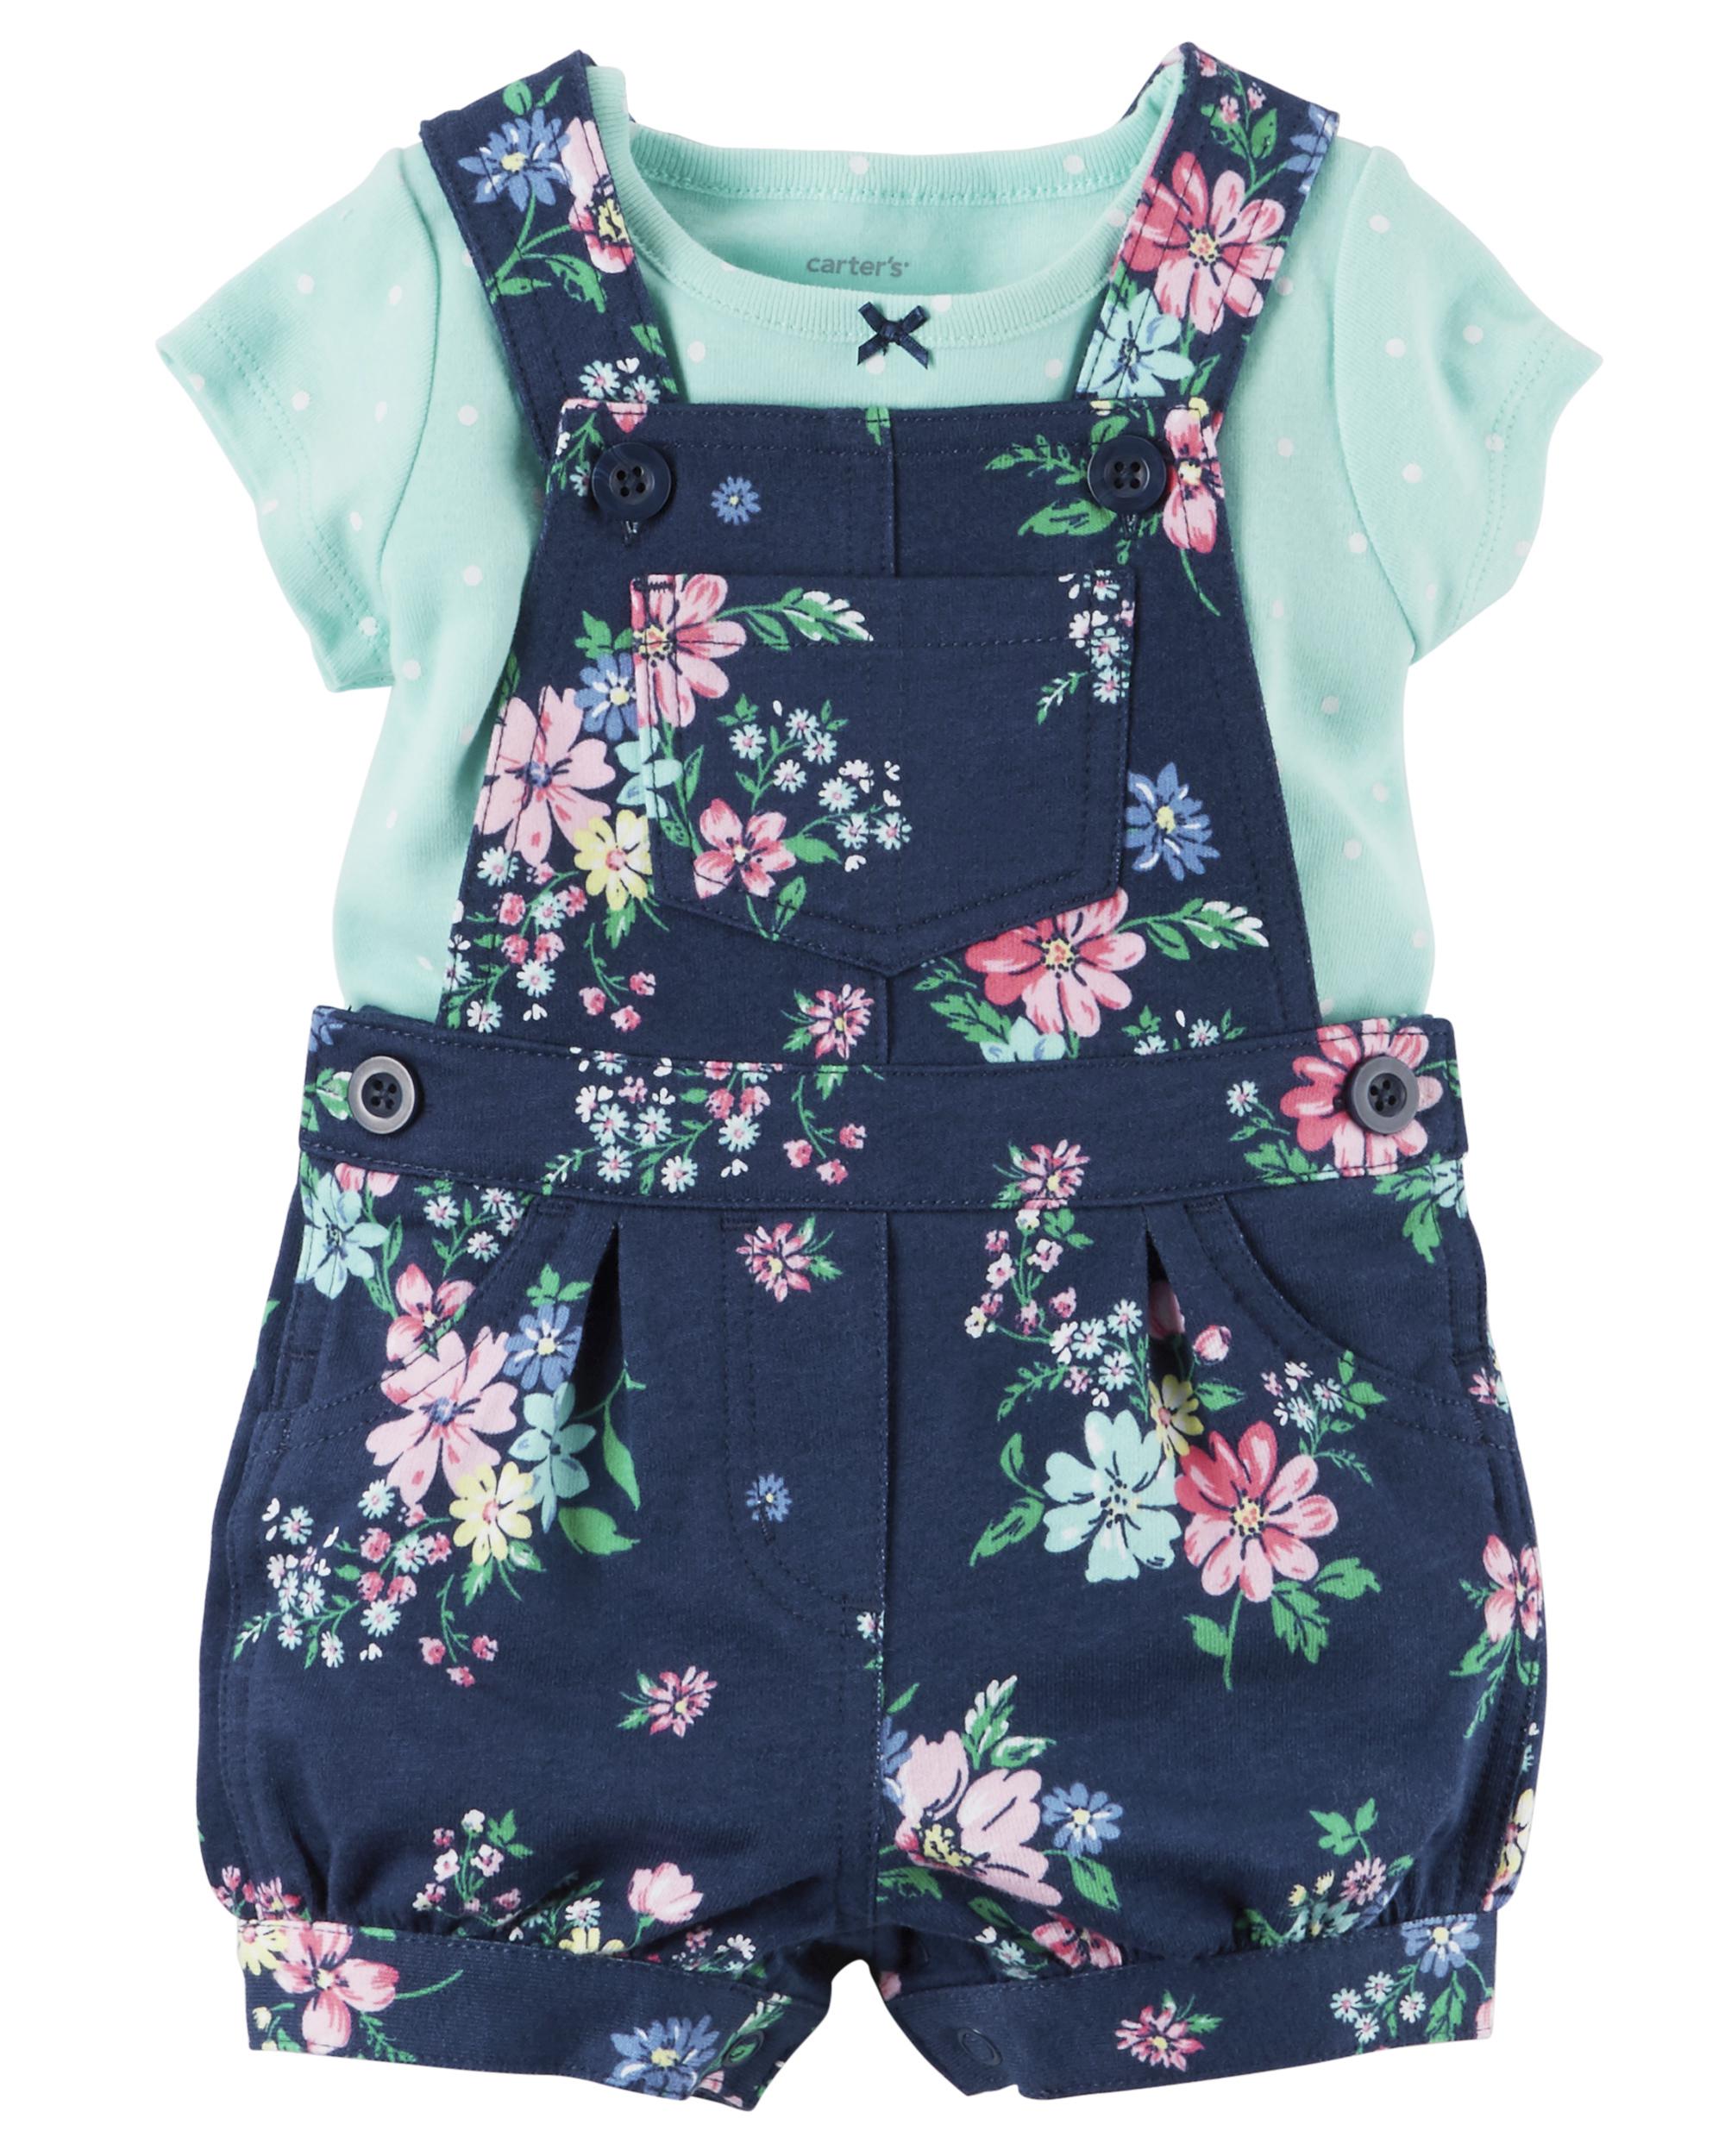 Carter's Newborn & Infant Girls' Shirt & Shortalls Floral